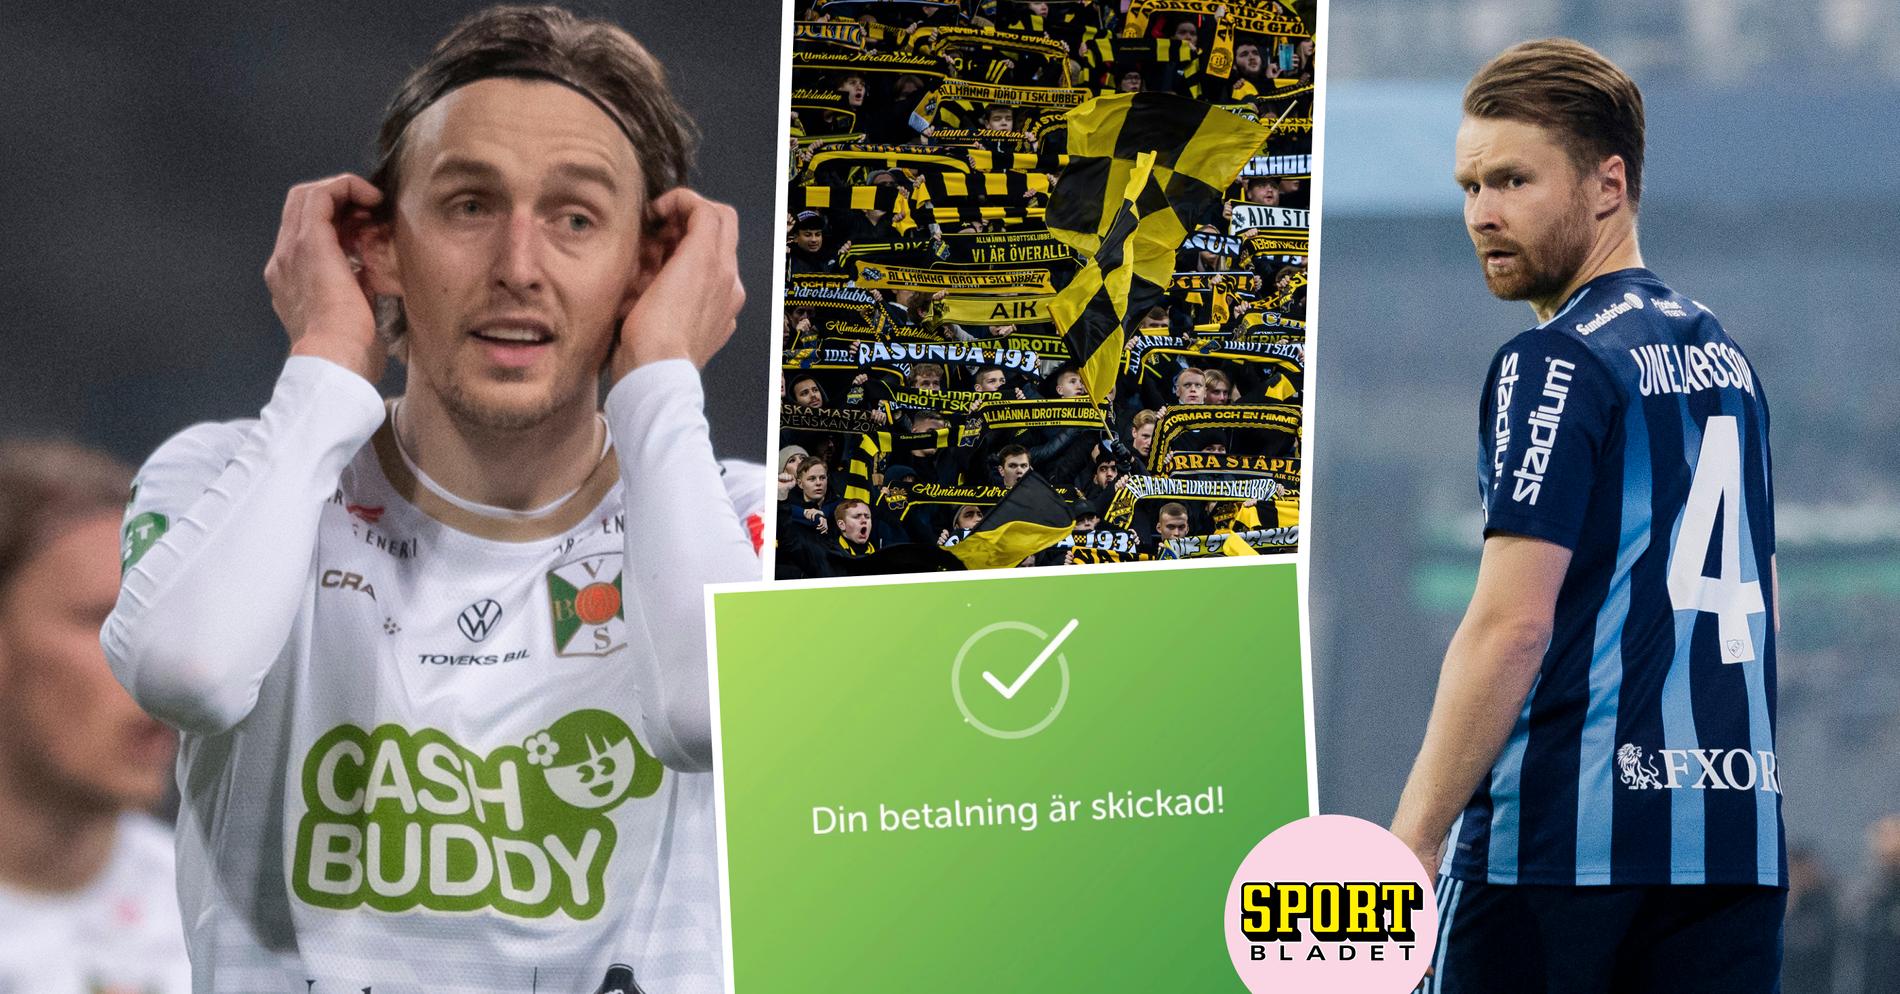 AIK Fotboll: Oväntade bidraget efter knallen på Tele2: ”Gubbarna är lyriska”